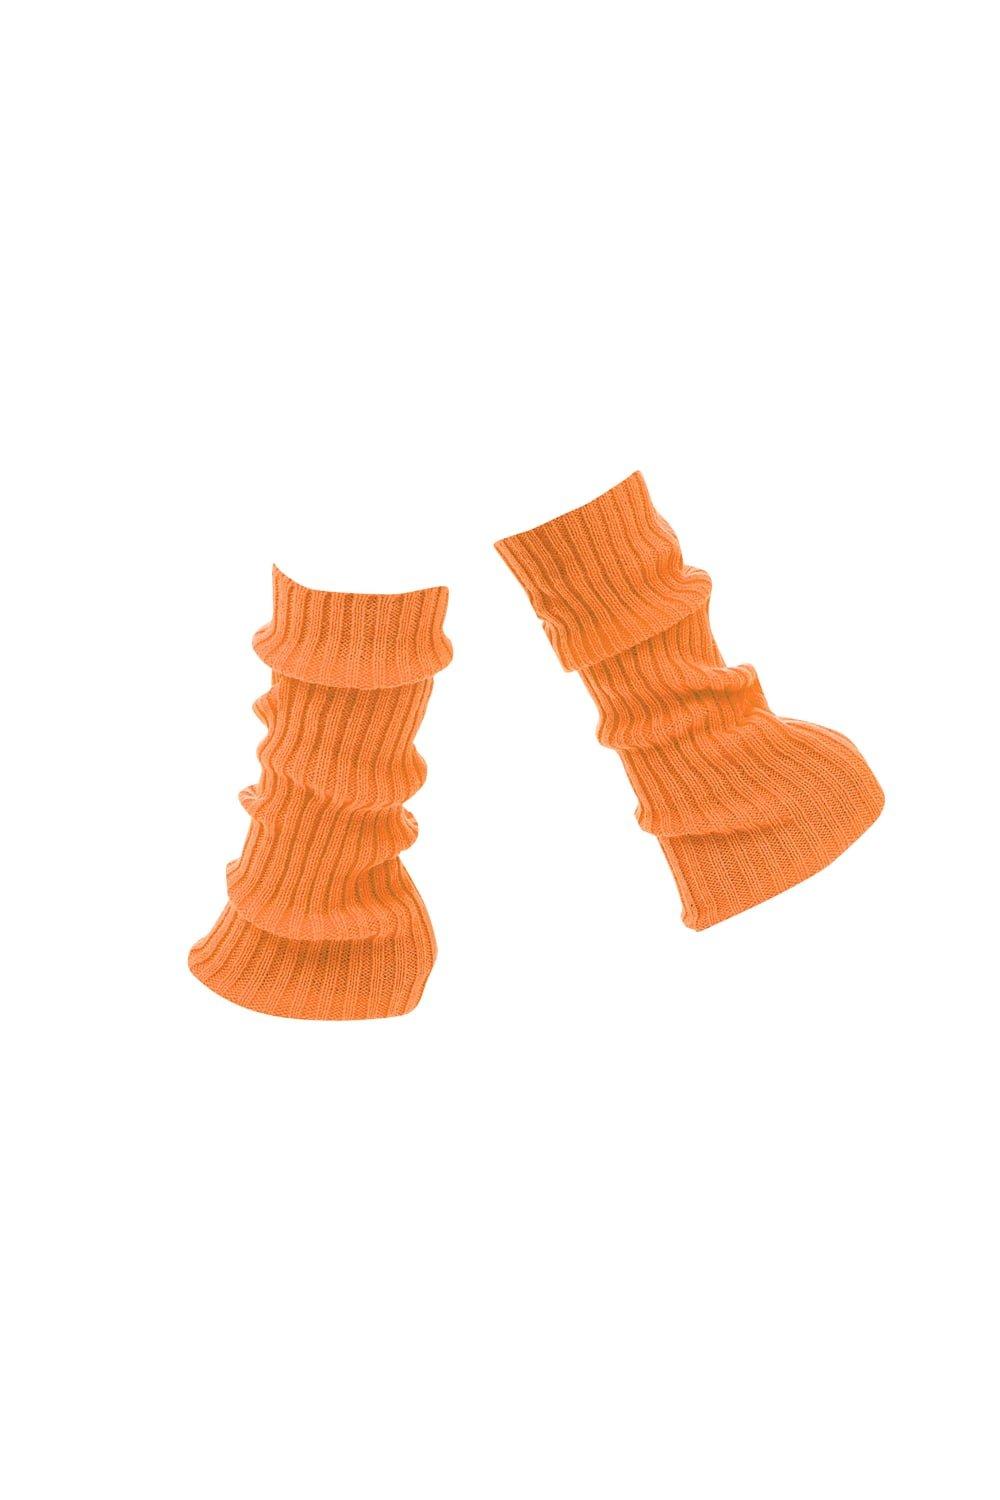 Bristol Novelty Women's Leg Warmers|orange